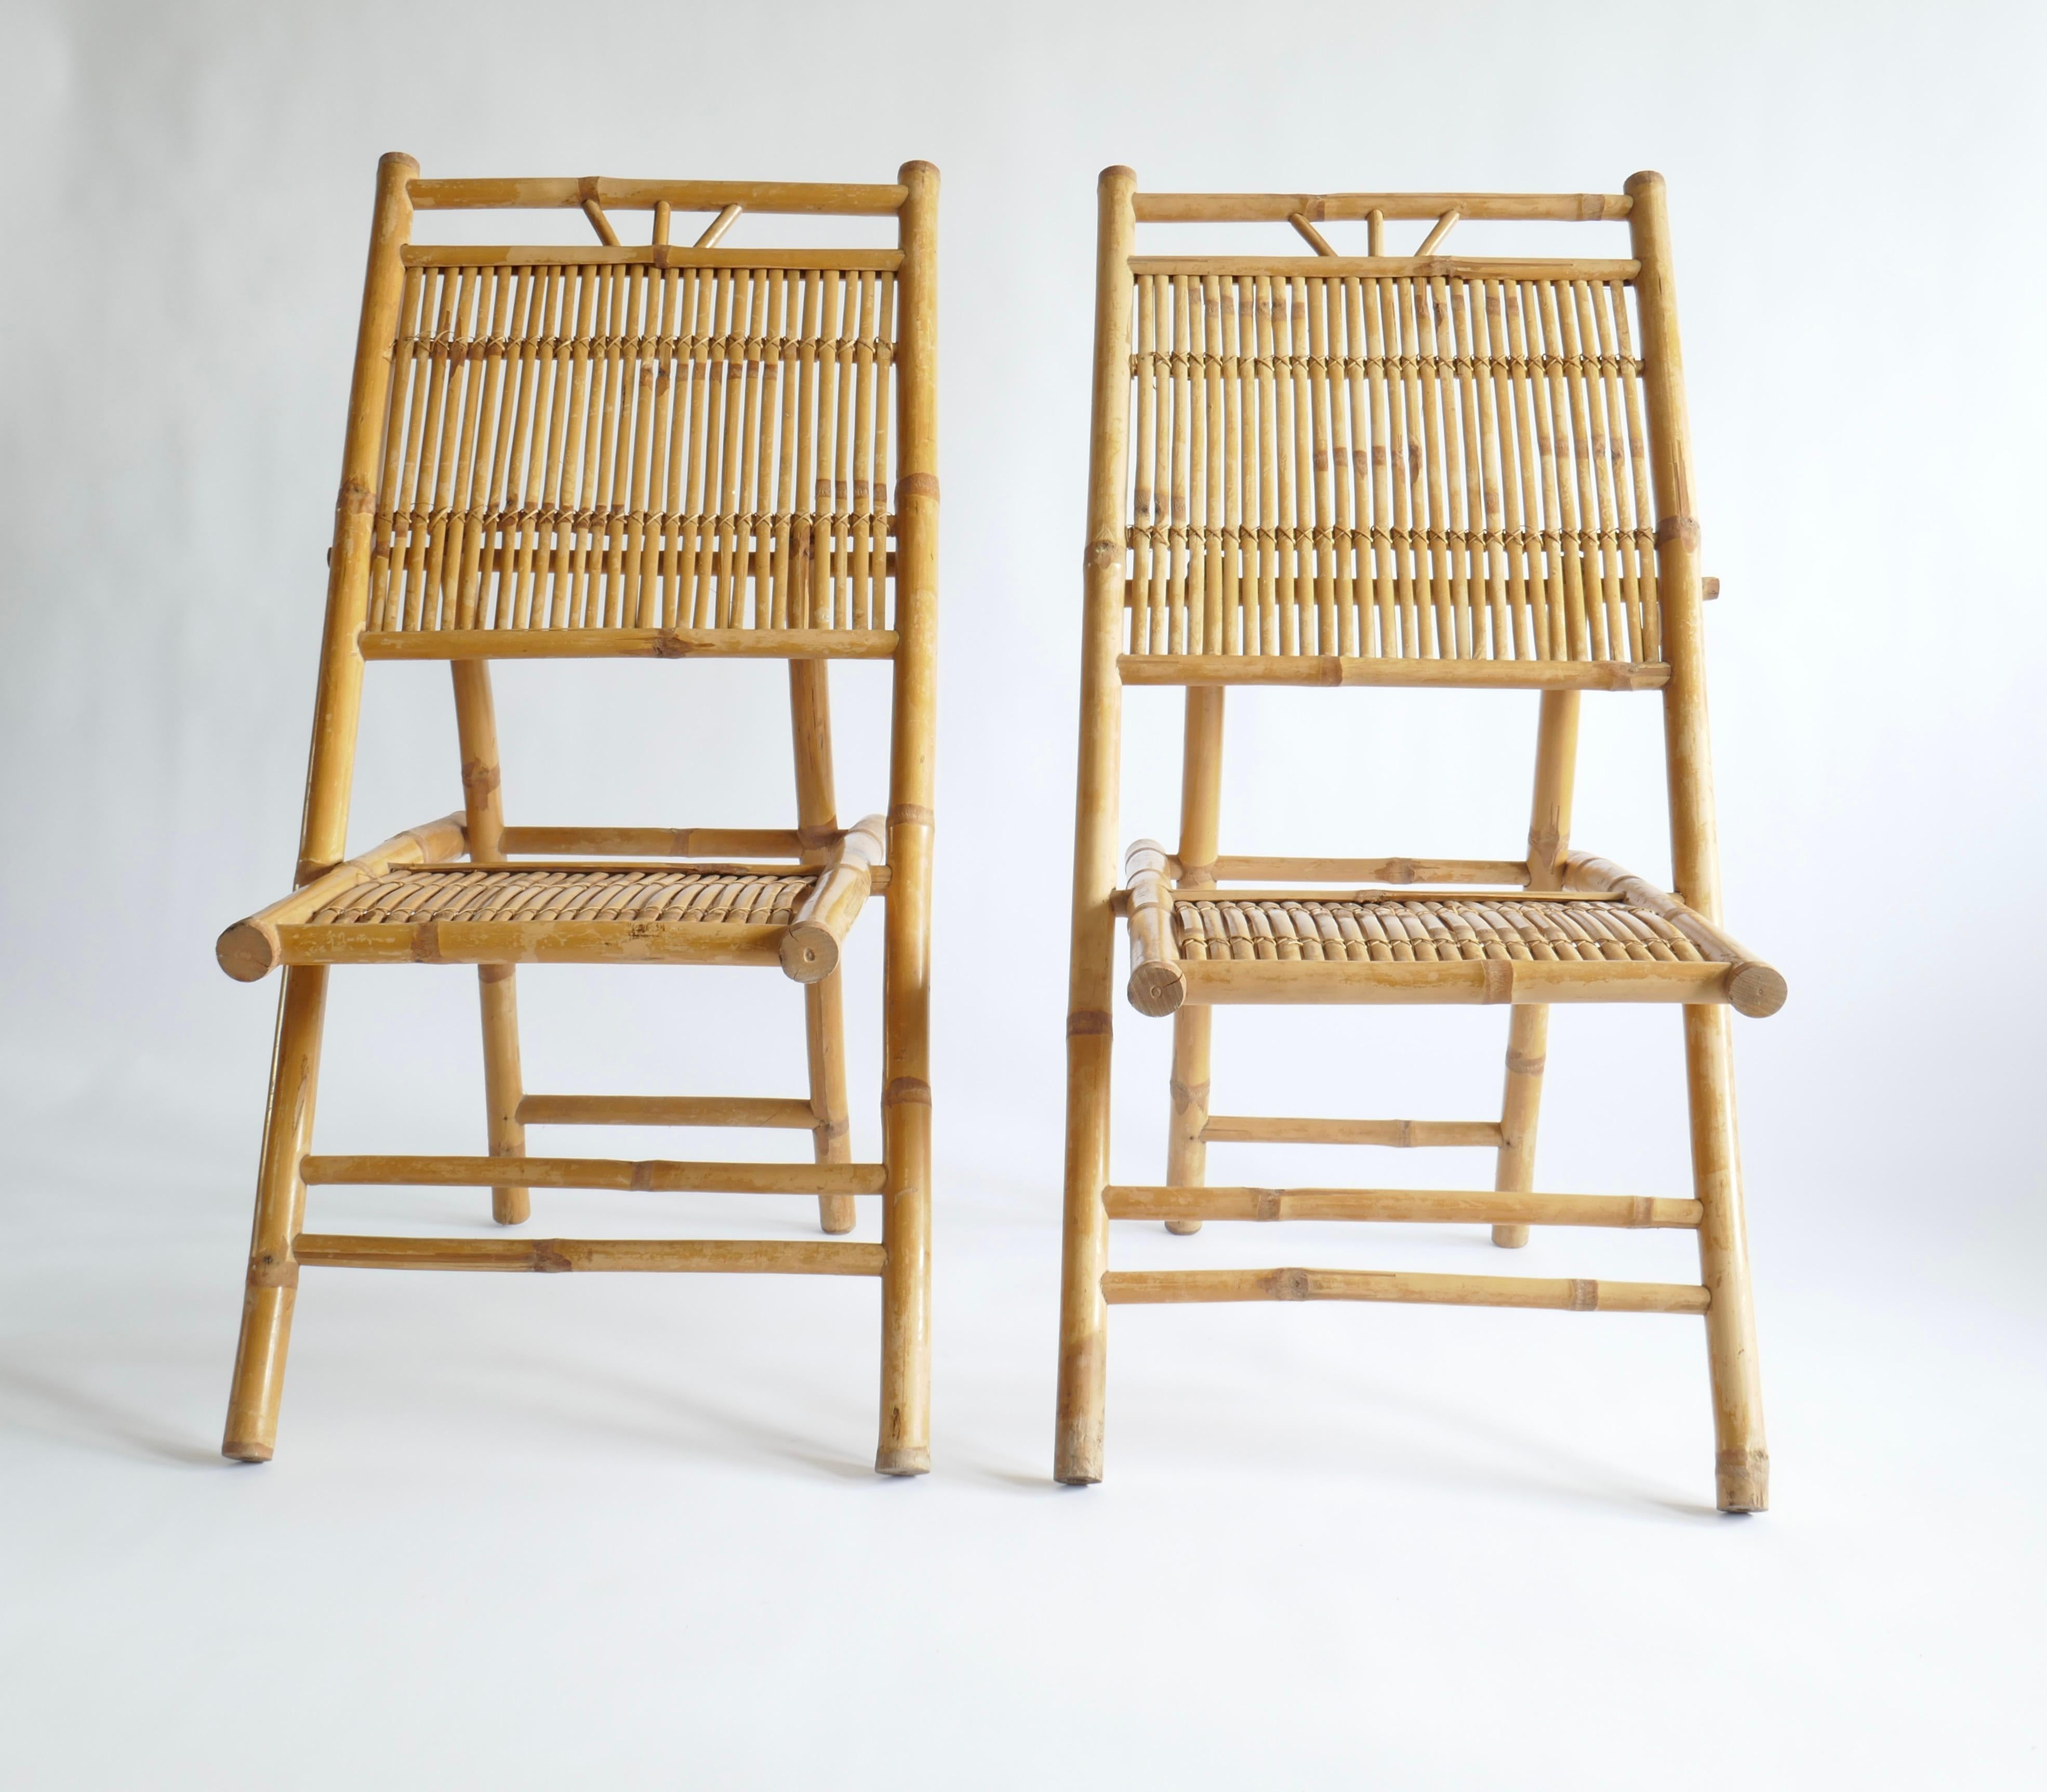 Elegante paire de chaises d'appoint ou de salon en bambou et rotin de style italien du milieu du siècle. Ils ont une structure classique de pieds en X et sont construits avec des lattes de rotin disposées et cousues à la main pour permettre la